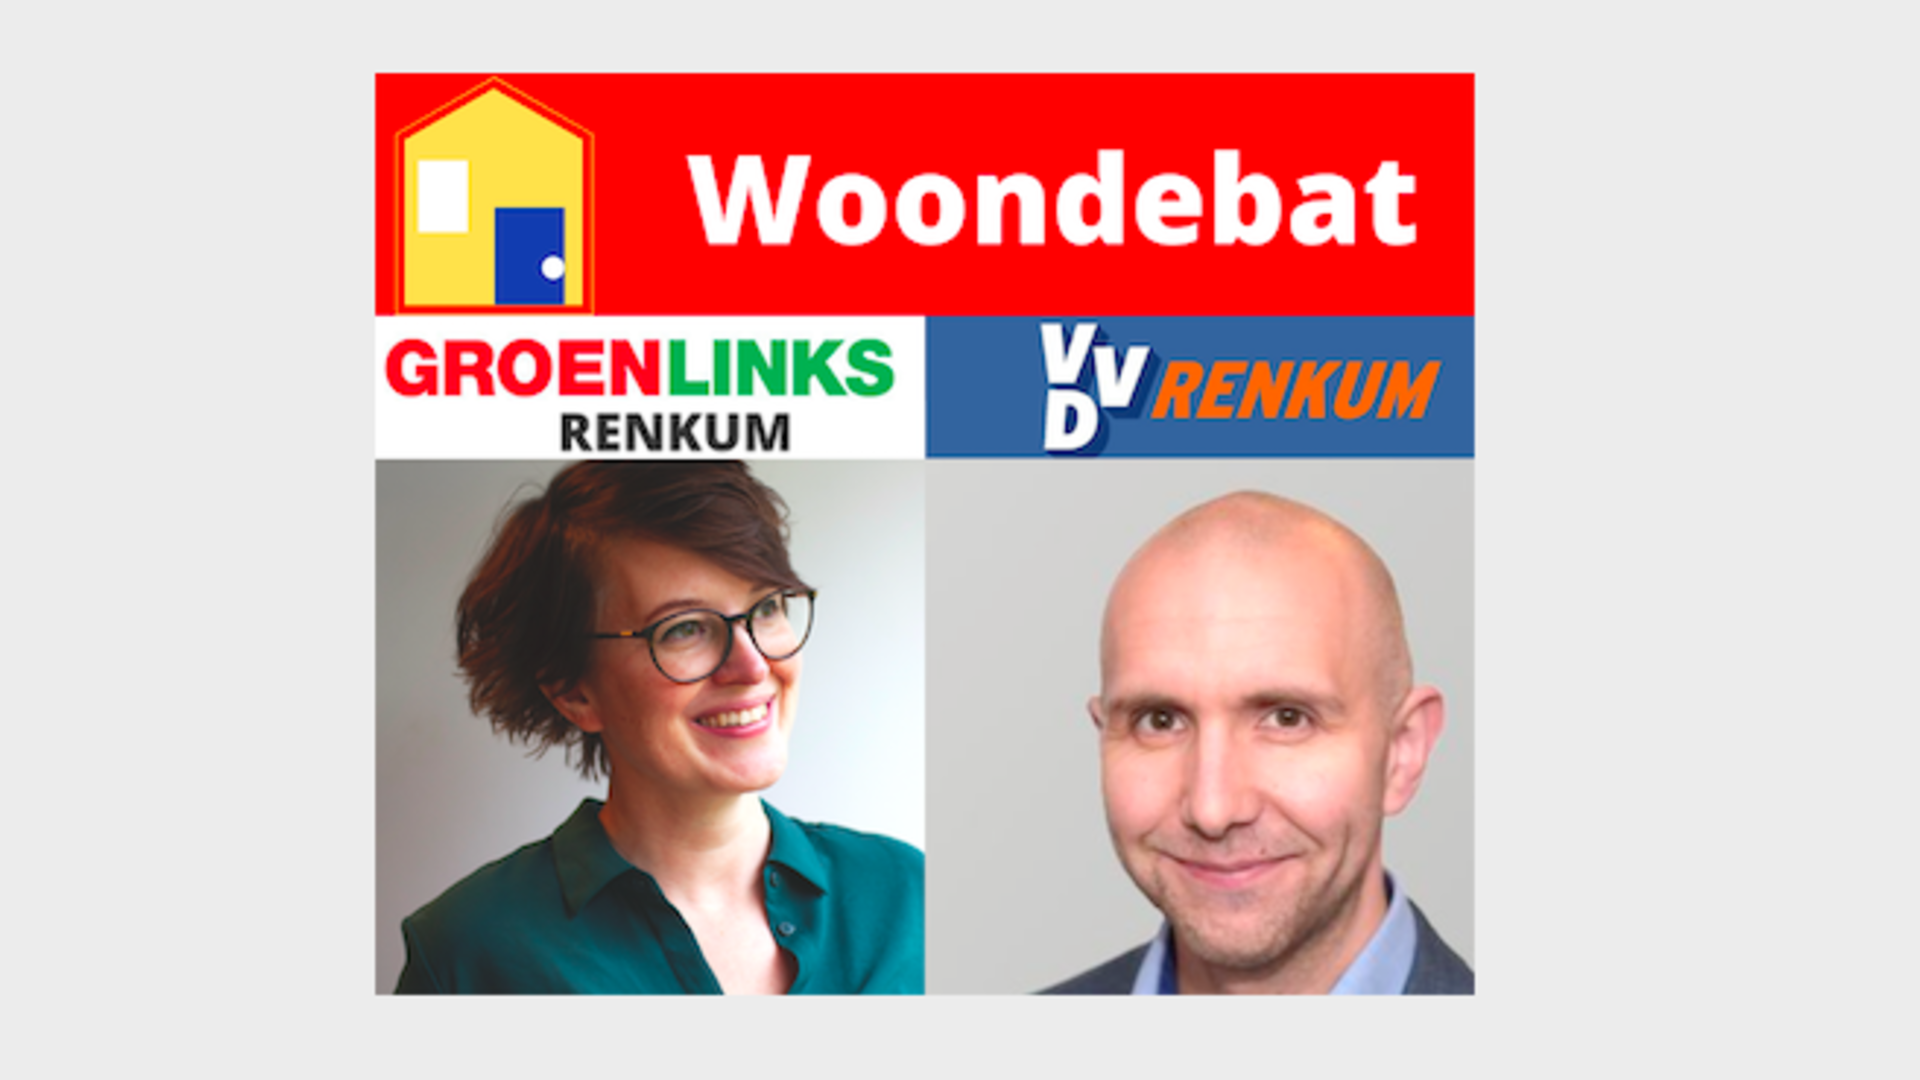 Woondebat GroenLinks VVD